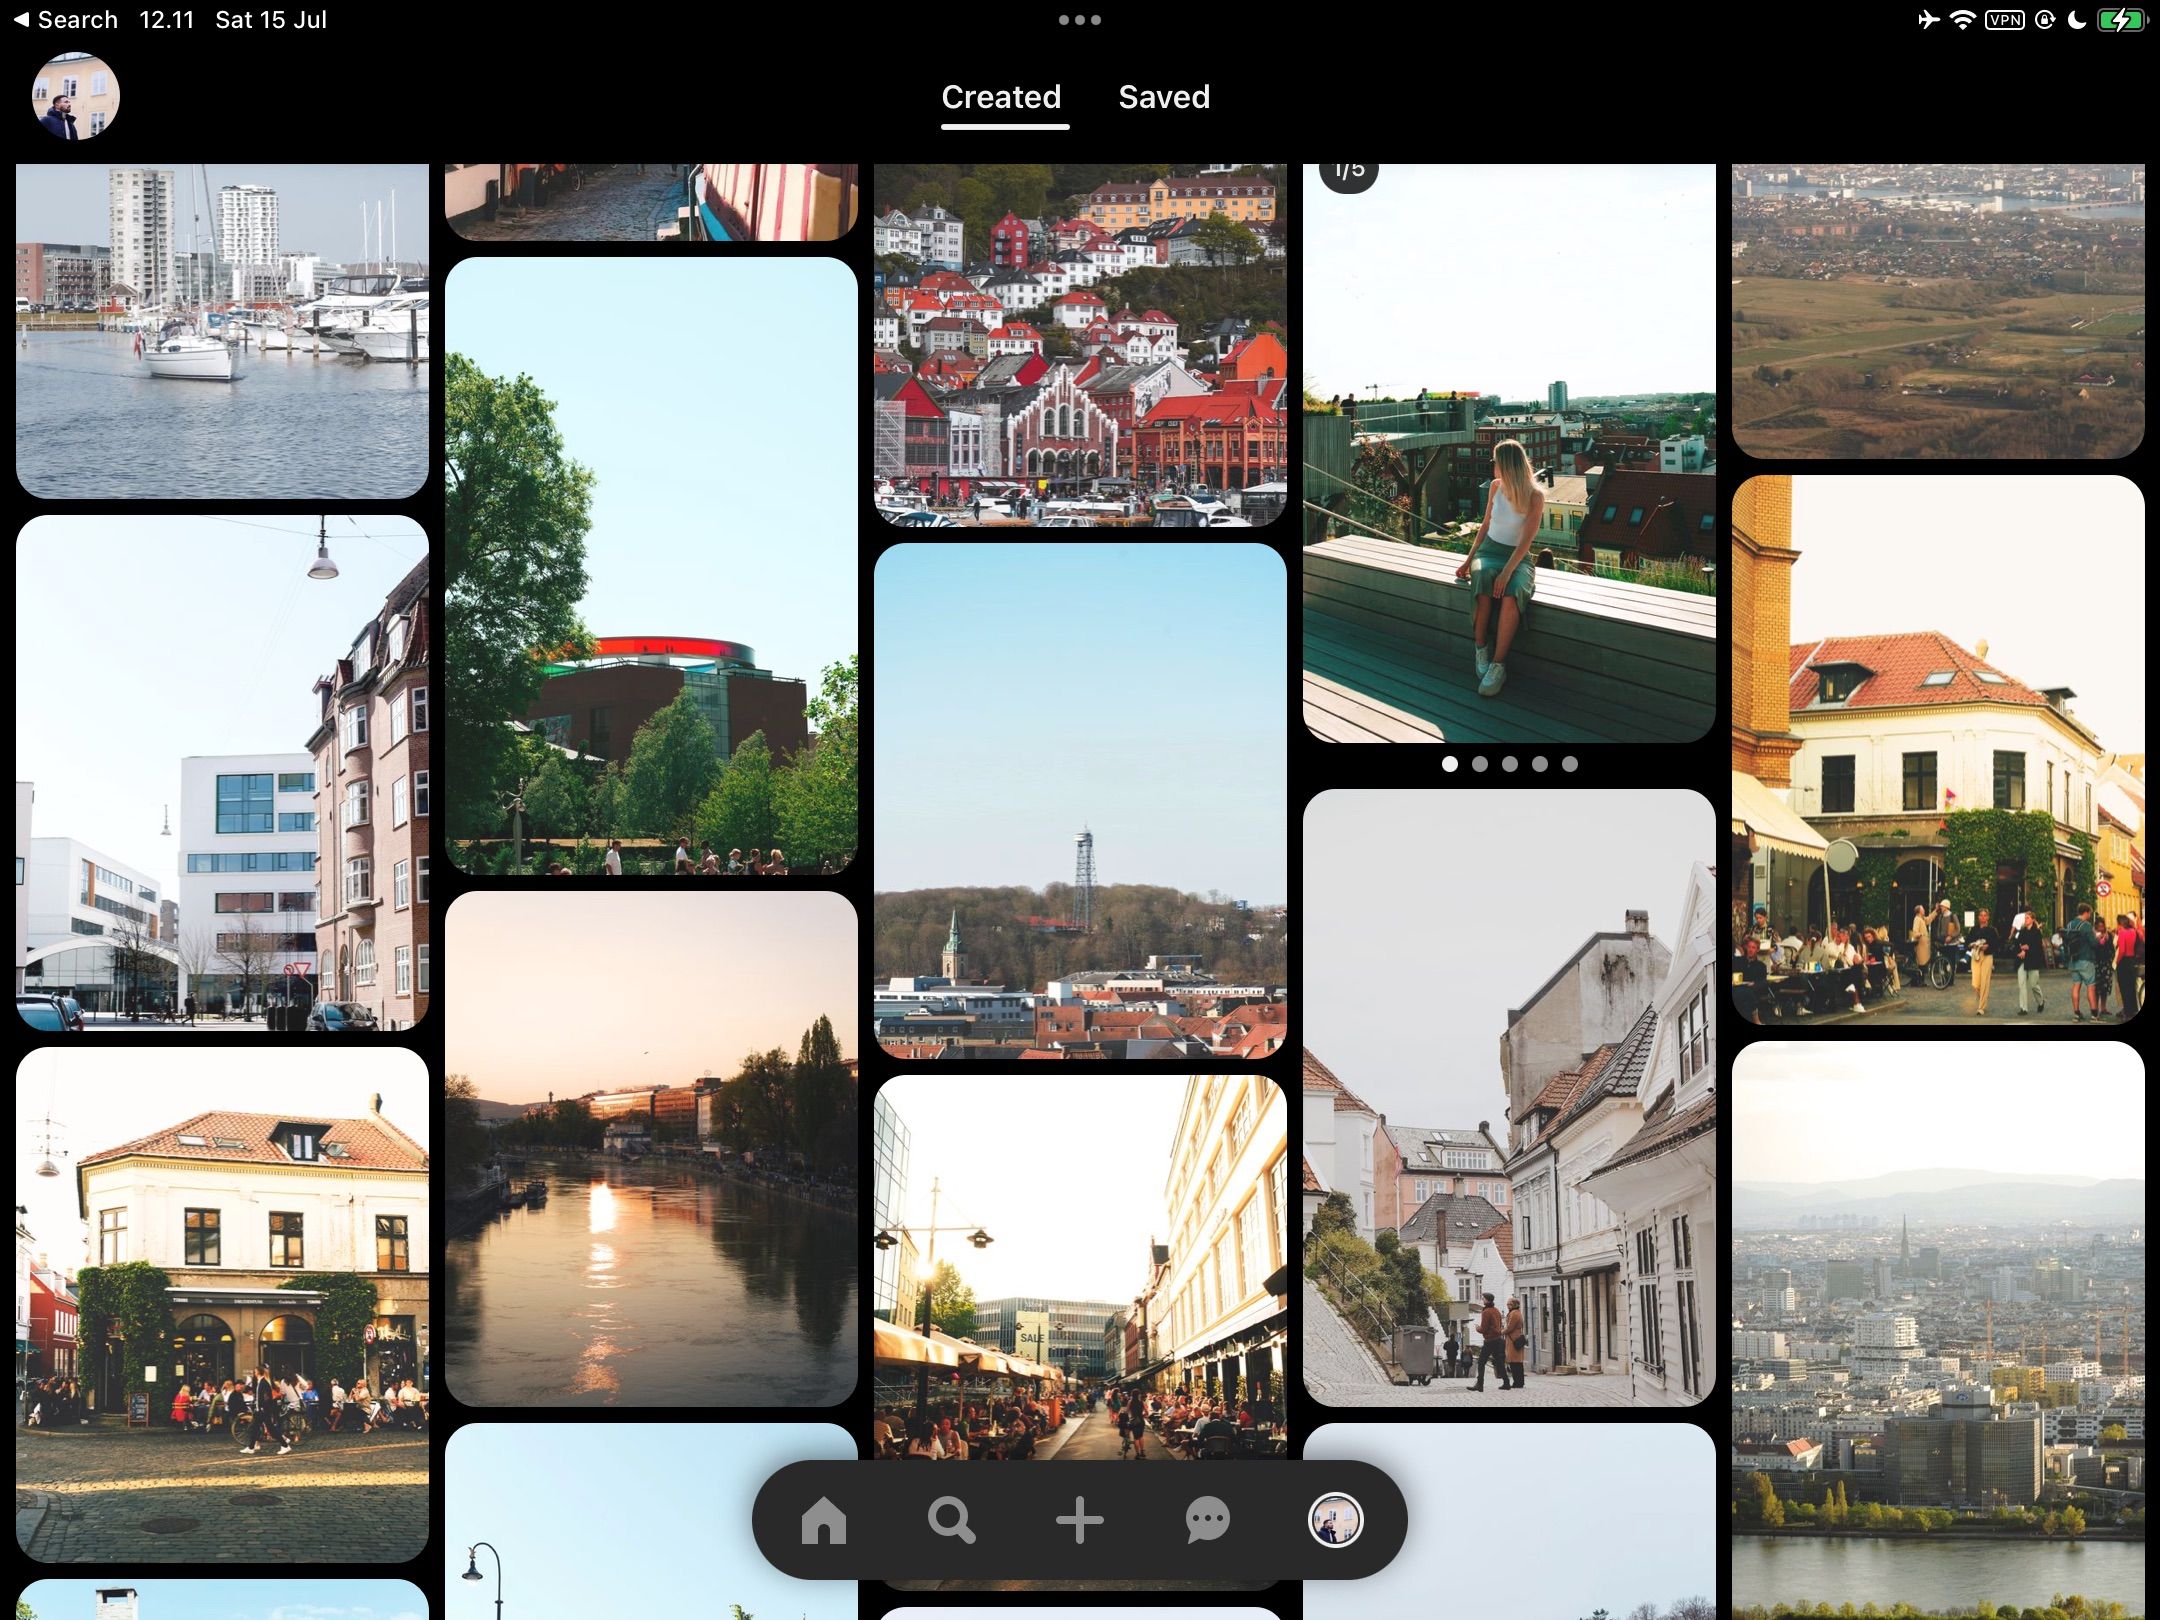 The Pinterest iPad App Interface